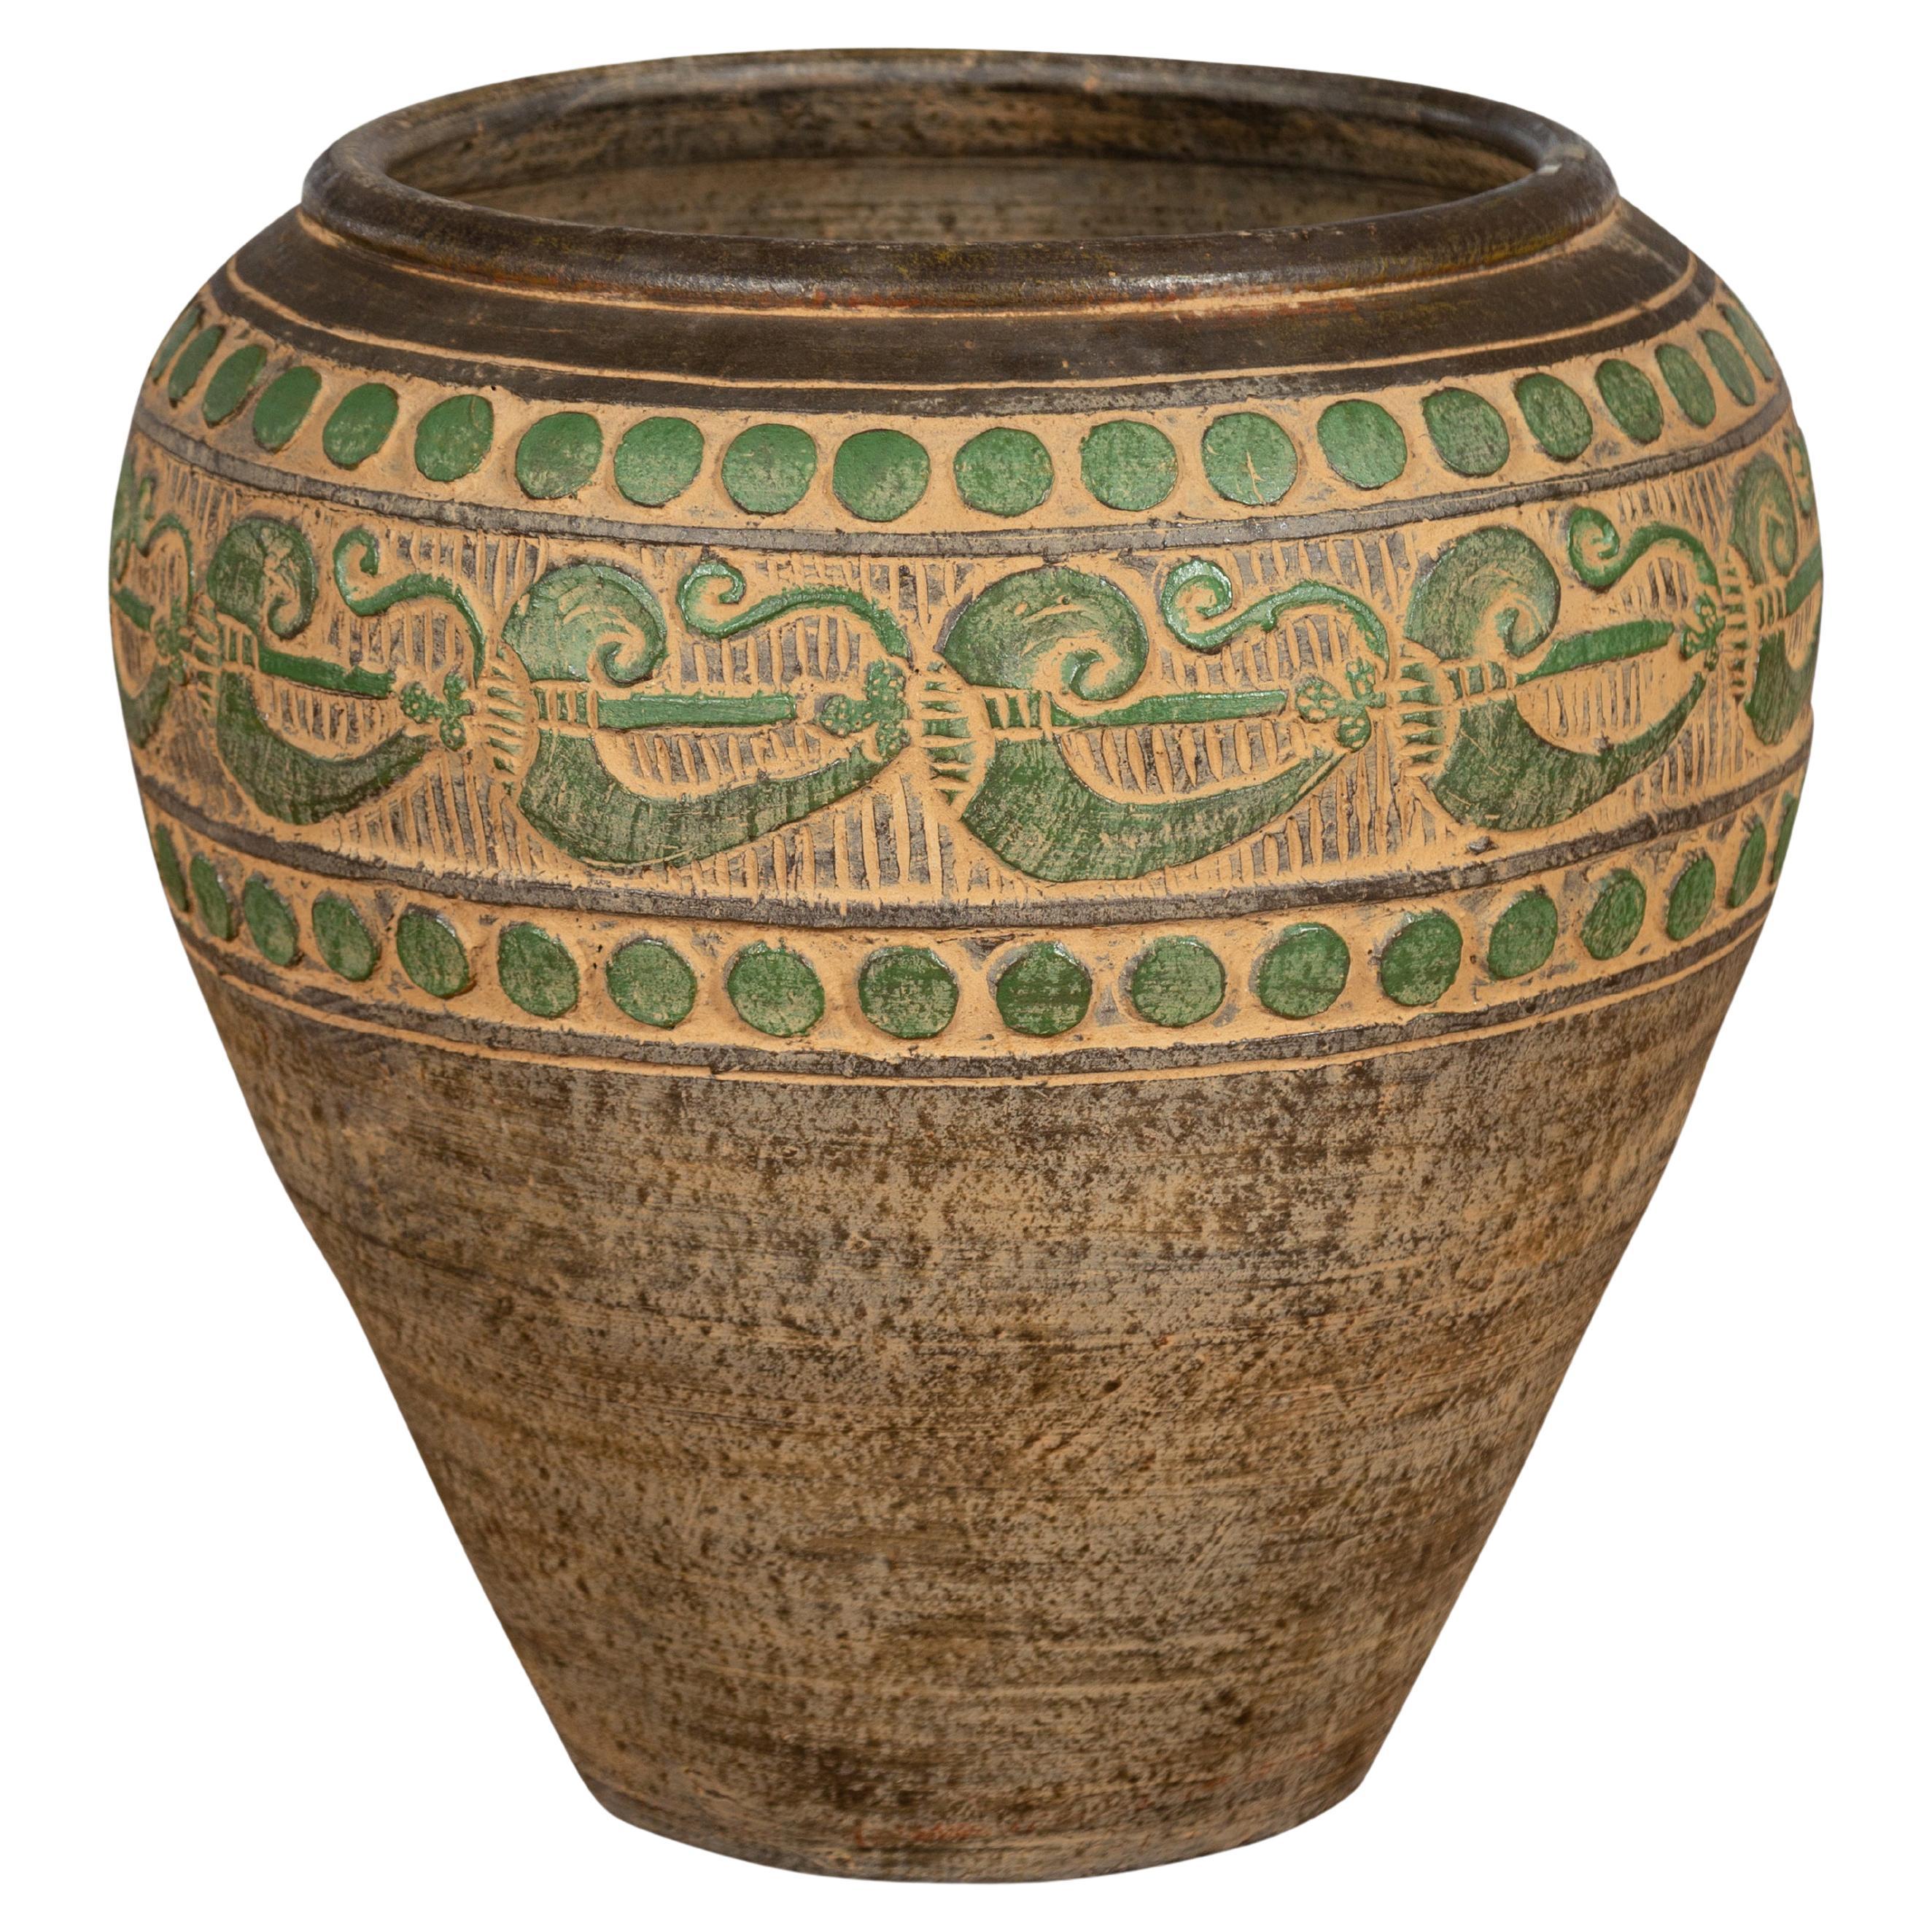 Thailändisches braunes Keramikgefäß mit grünen Schnörkeln und kugelförmigen Akzenten